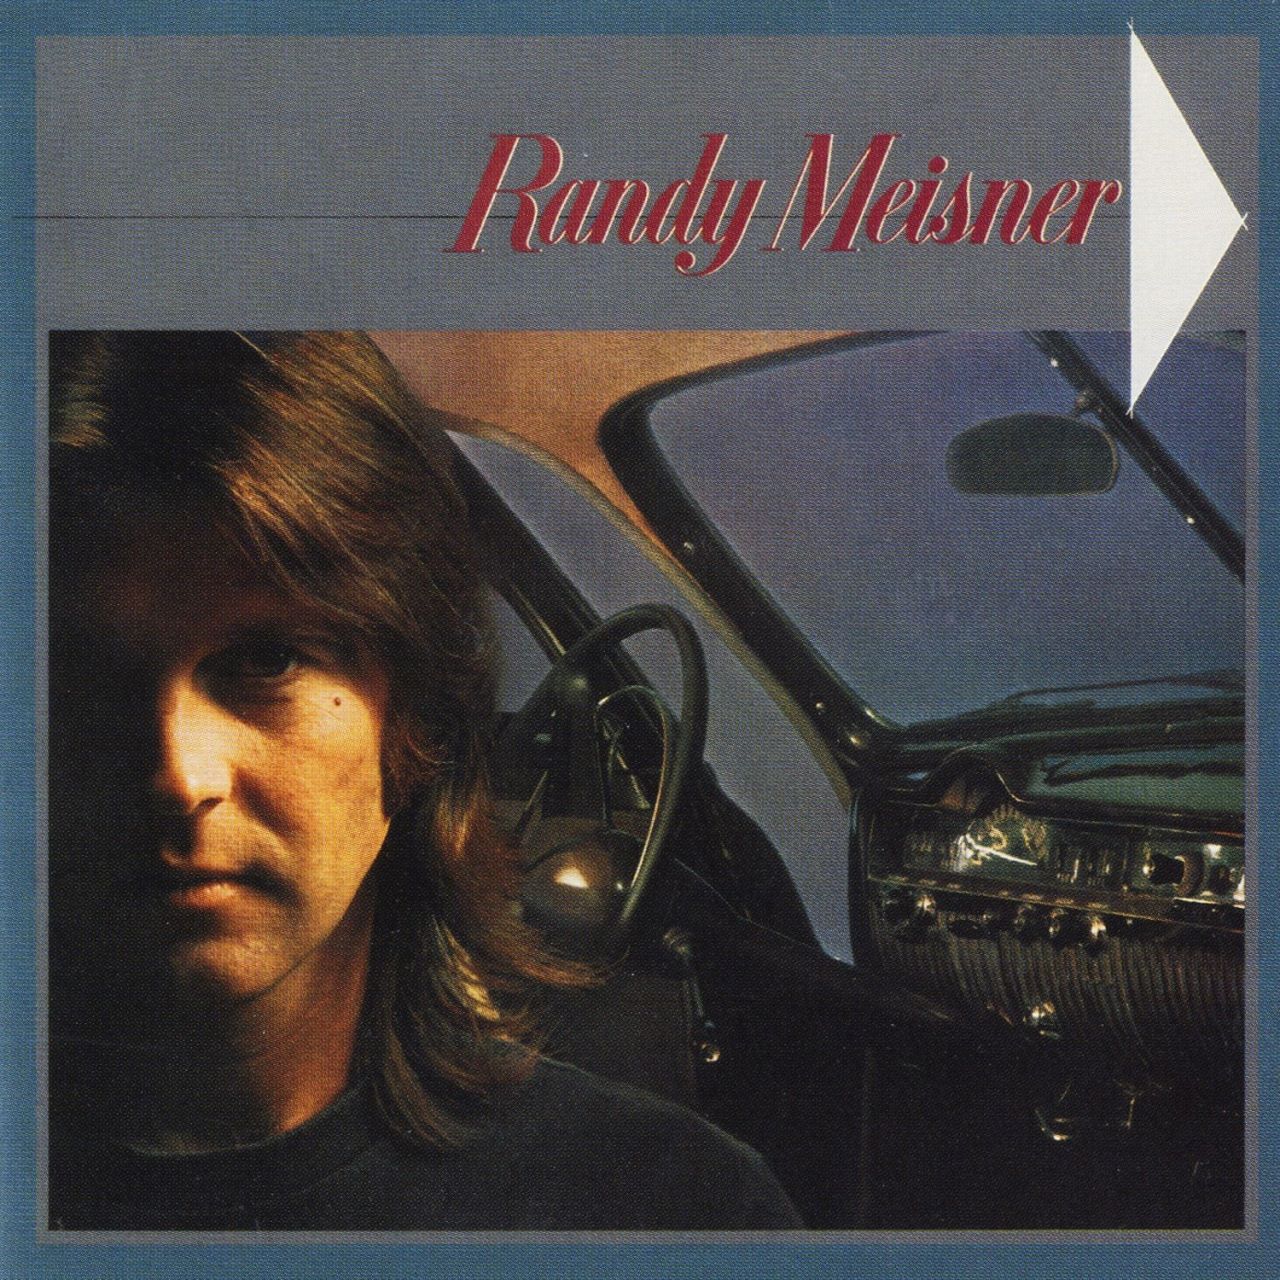 Randy Meisner - Randy Meisner cover album